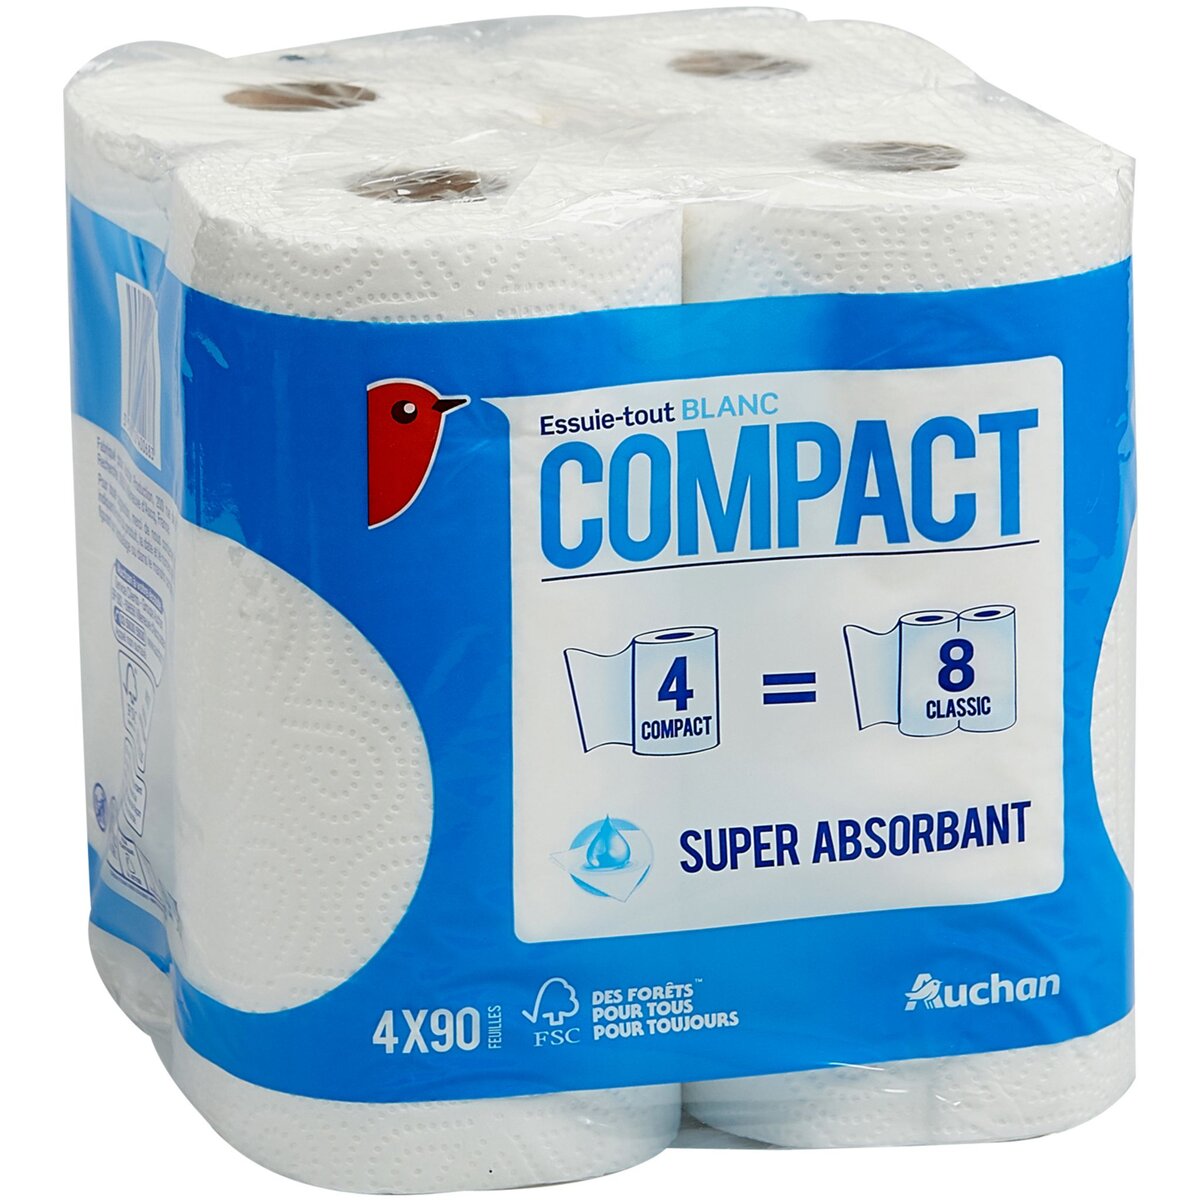 AUCHAN Essuie-tout blanc compact super absorbant = 8 standards 4 rouleaux